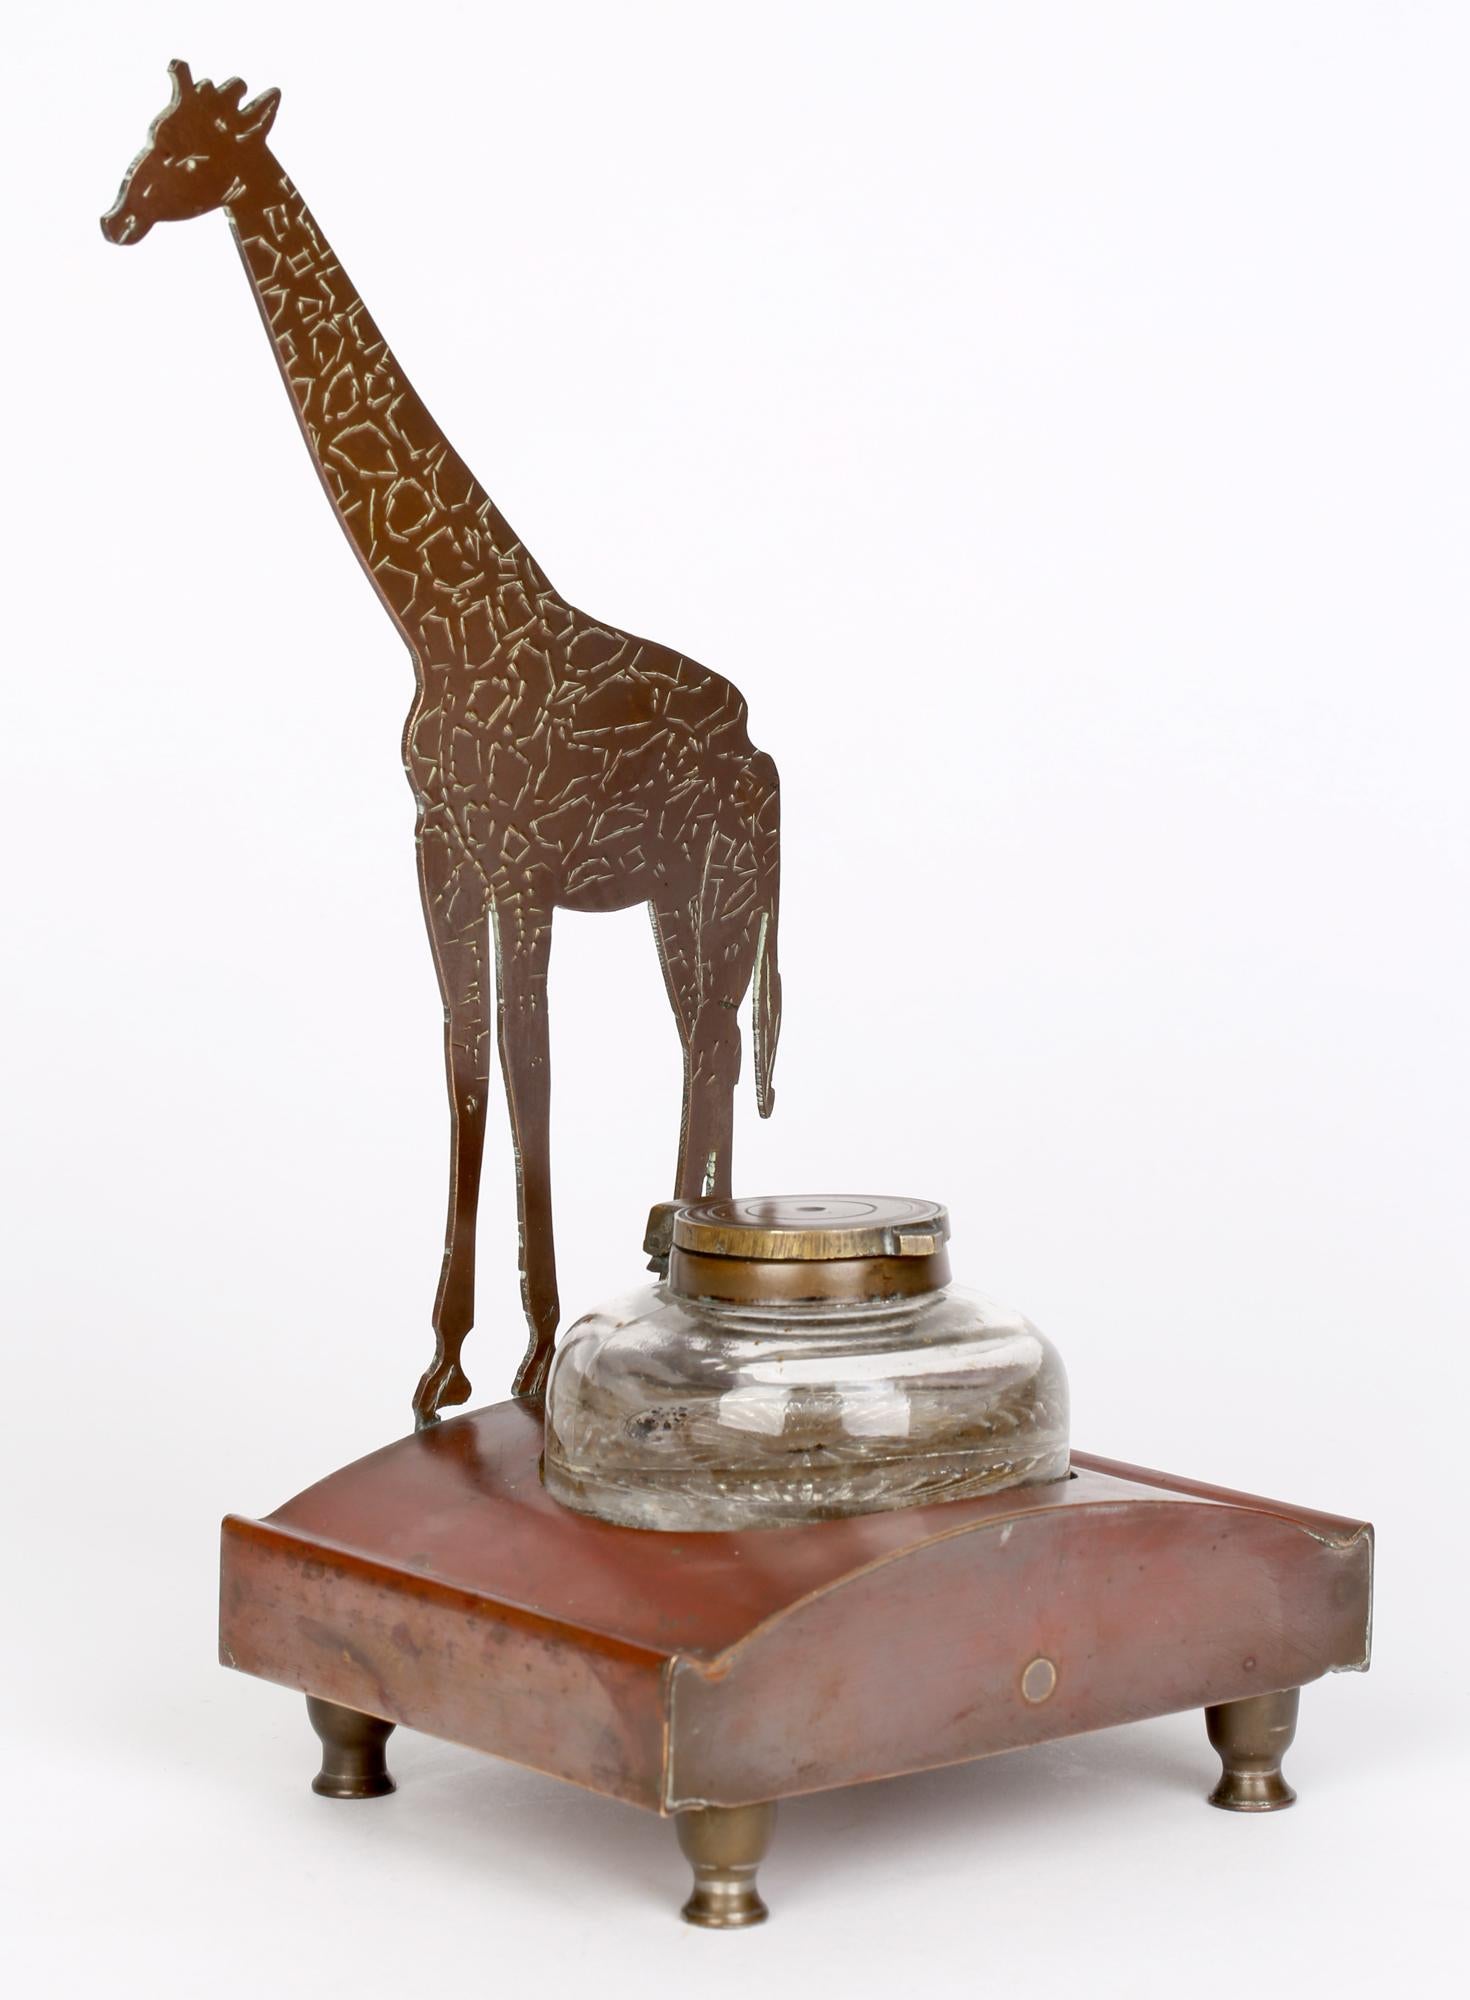 Ignatius Taschner 'German, 1871-1913' Jugendstil Giraffe Mounted Ink Stand 7